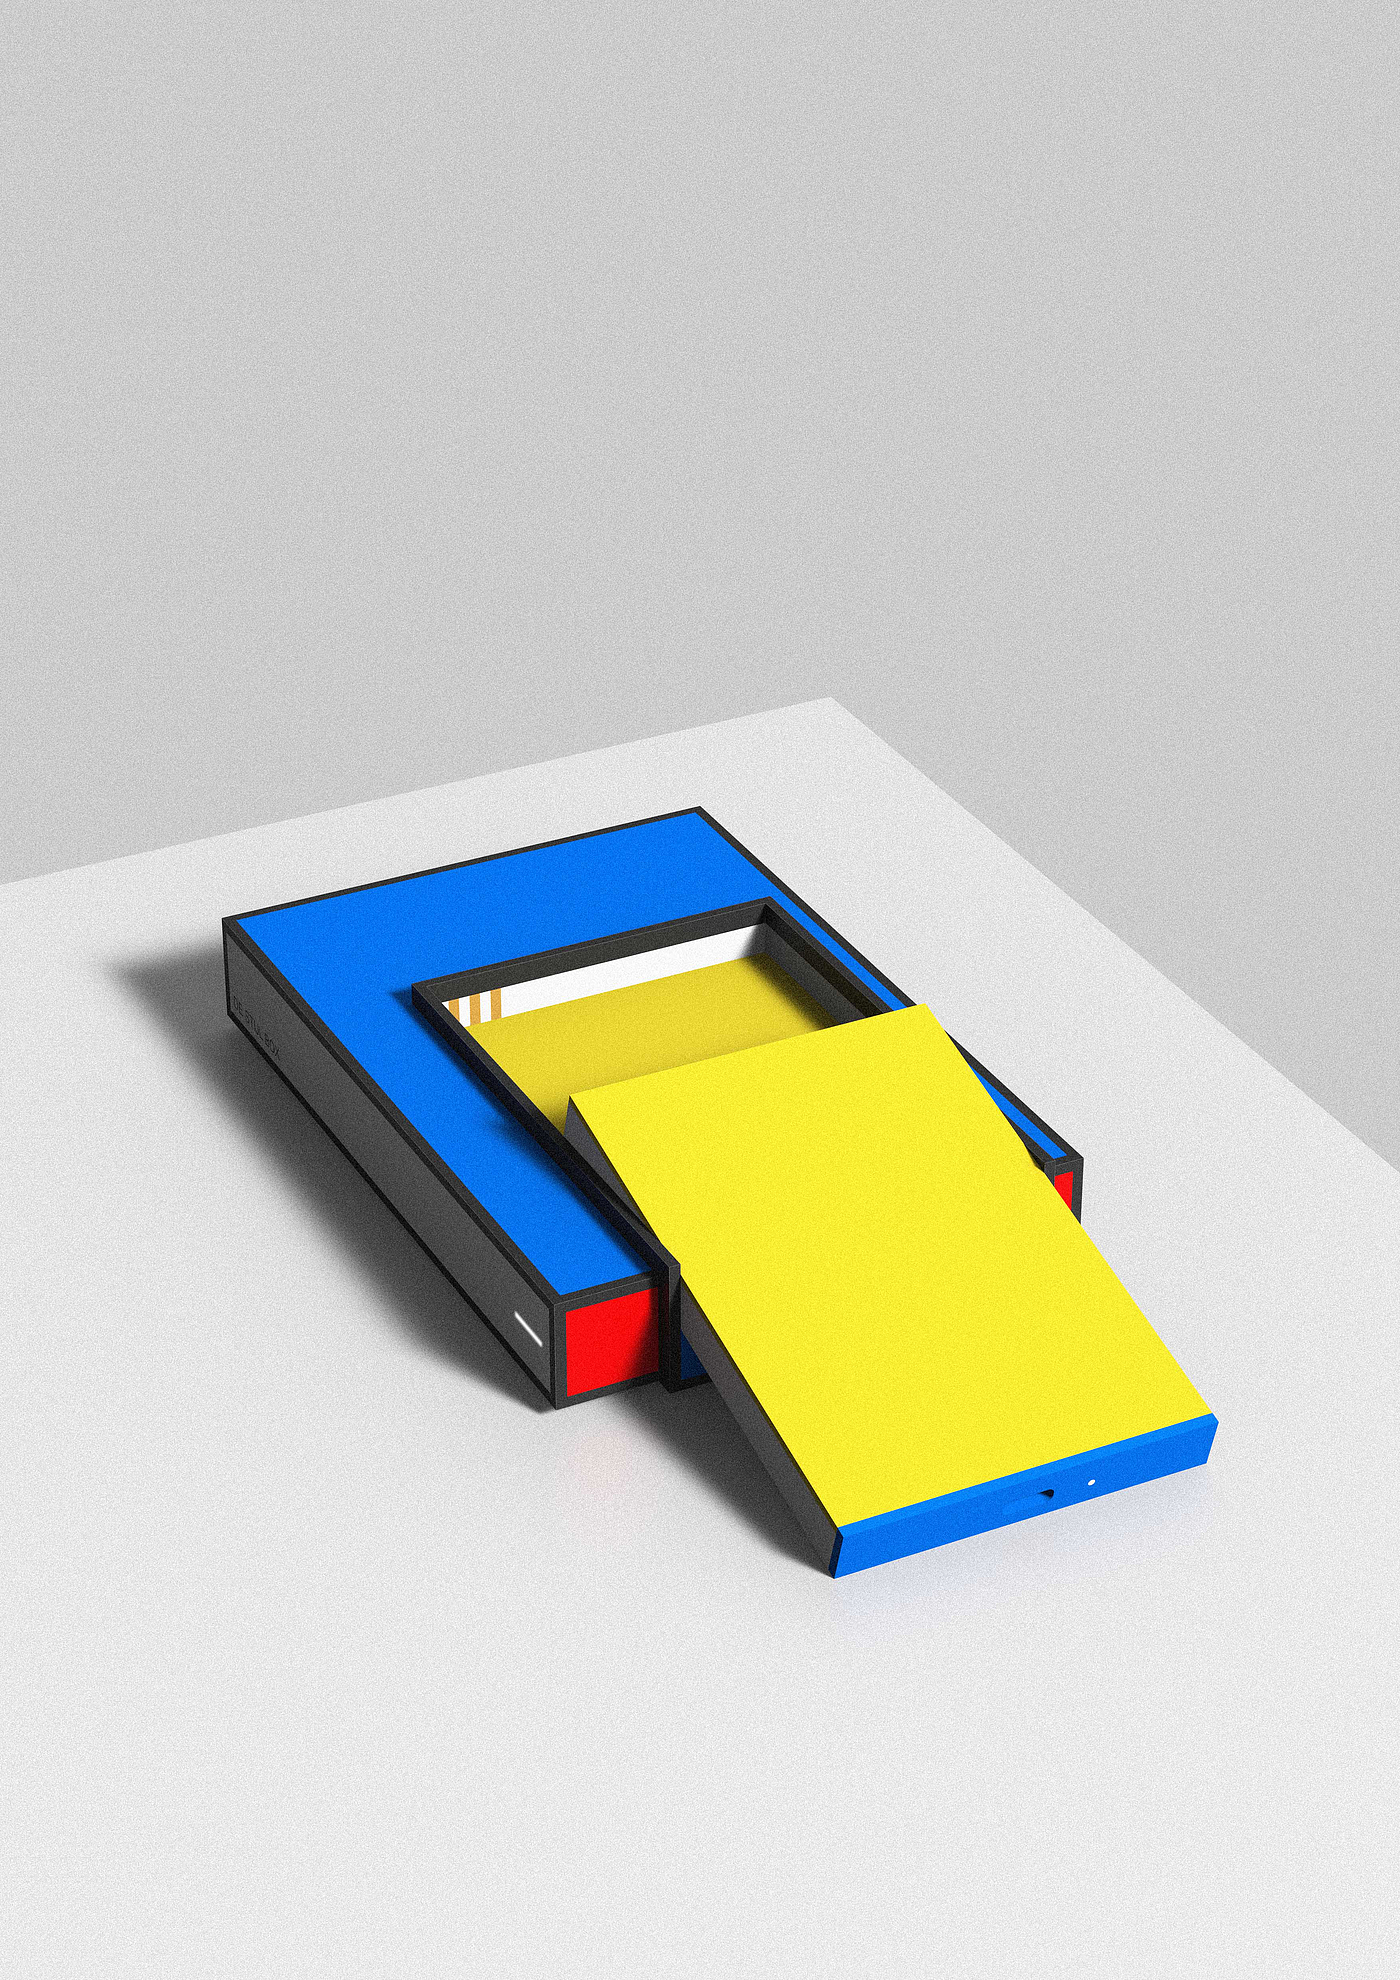 机顶盒，盒子，硬盘，蒙德里安，风格派，红黄蓝，